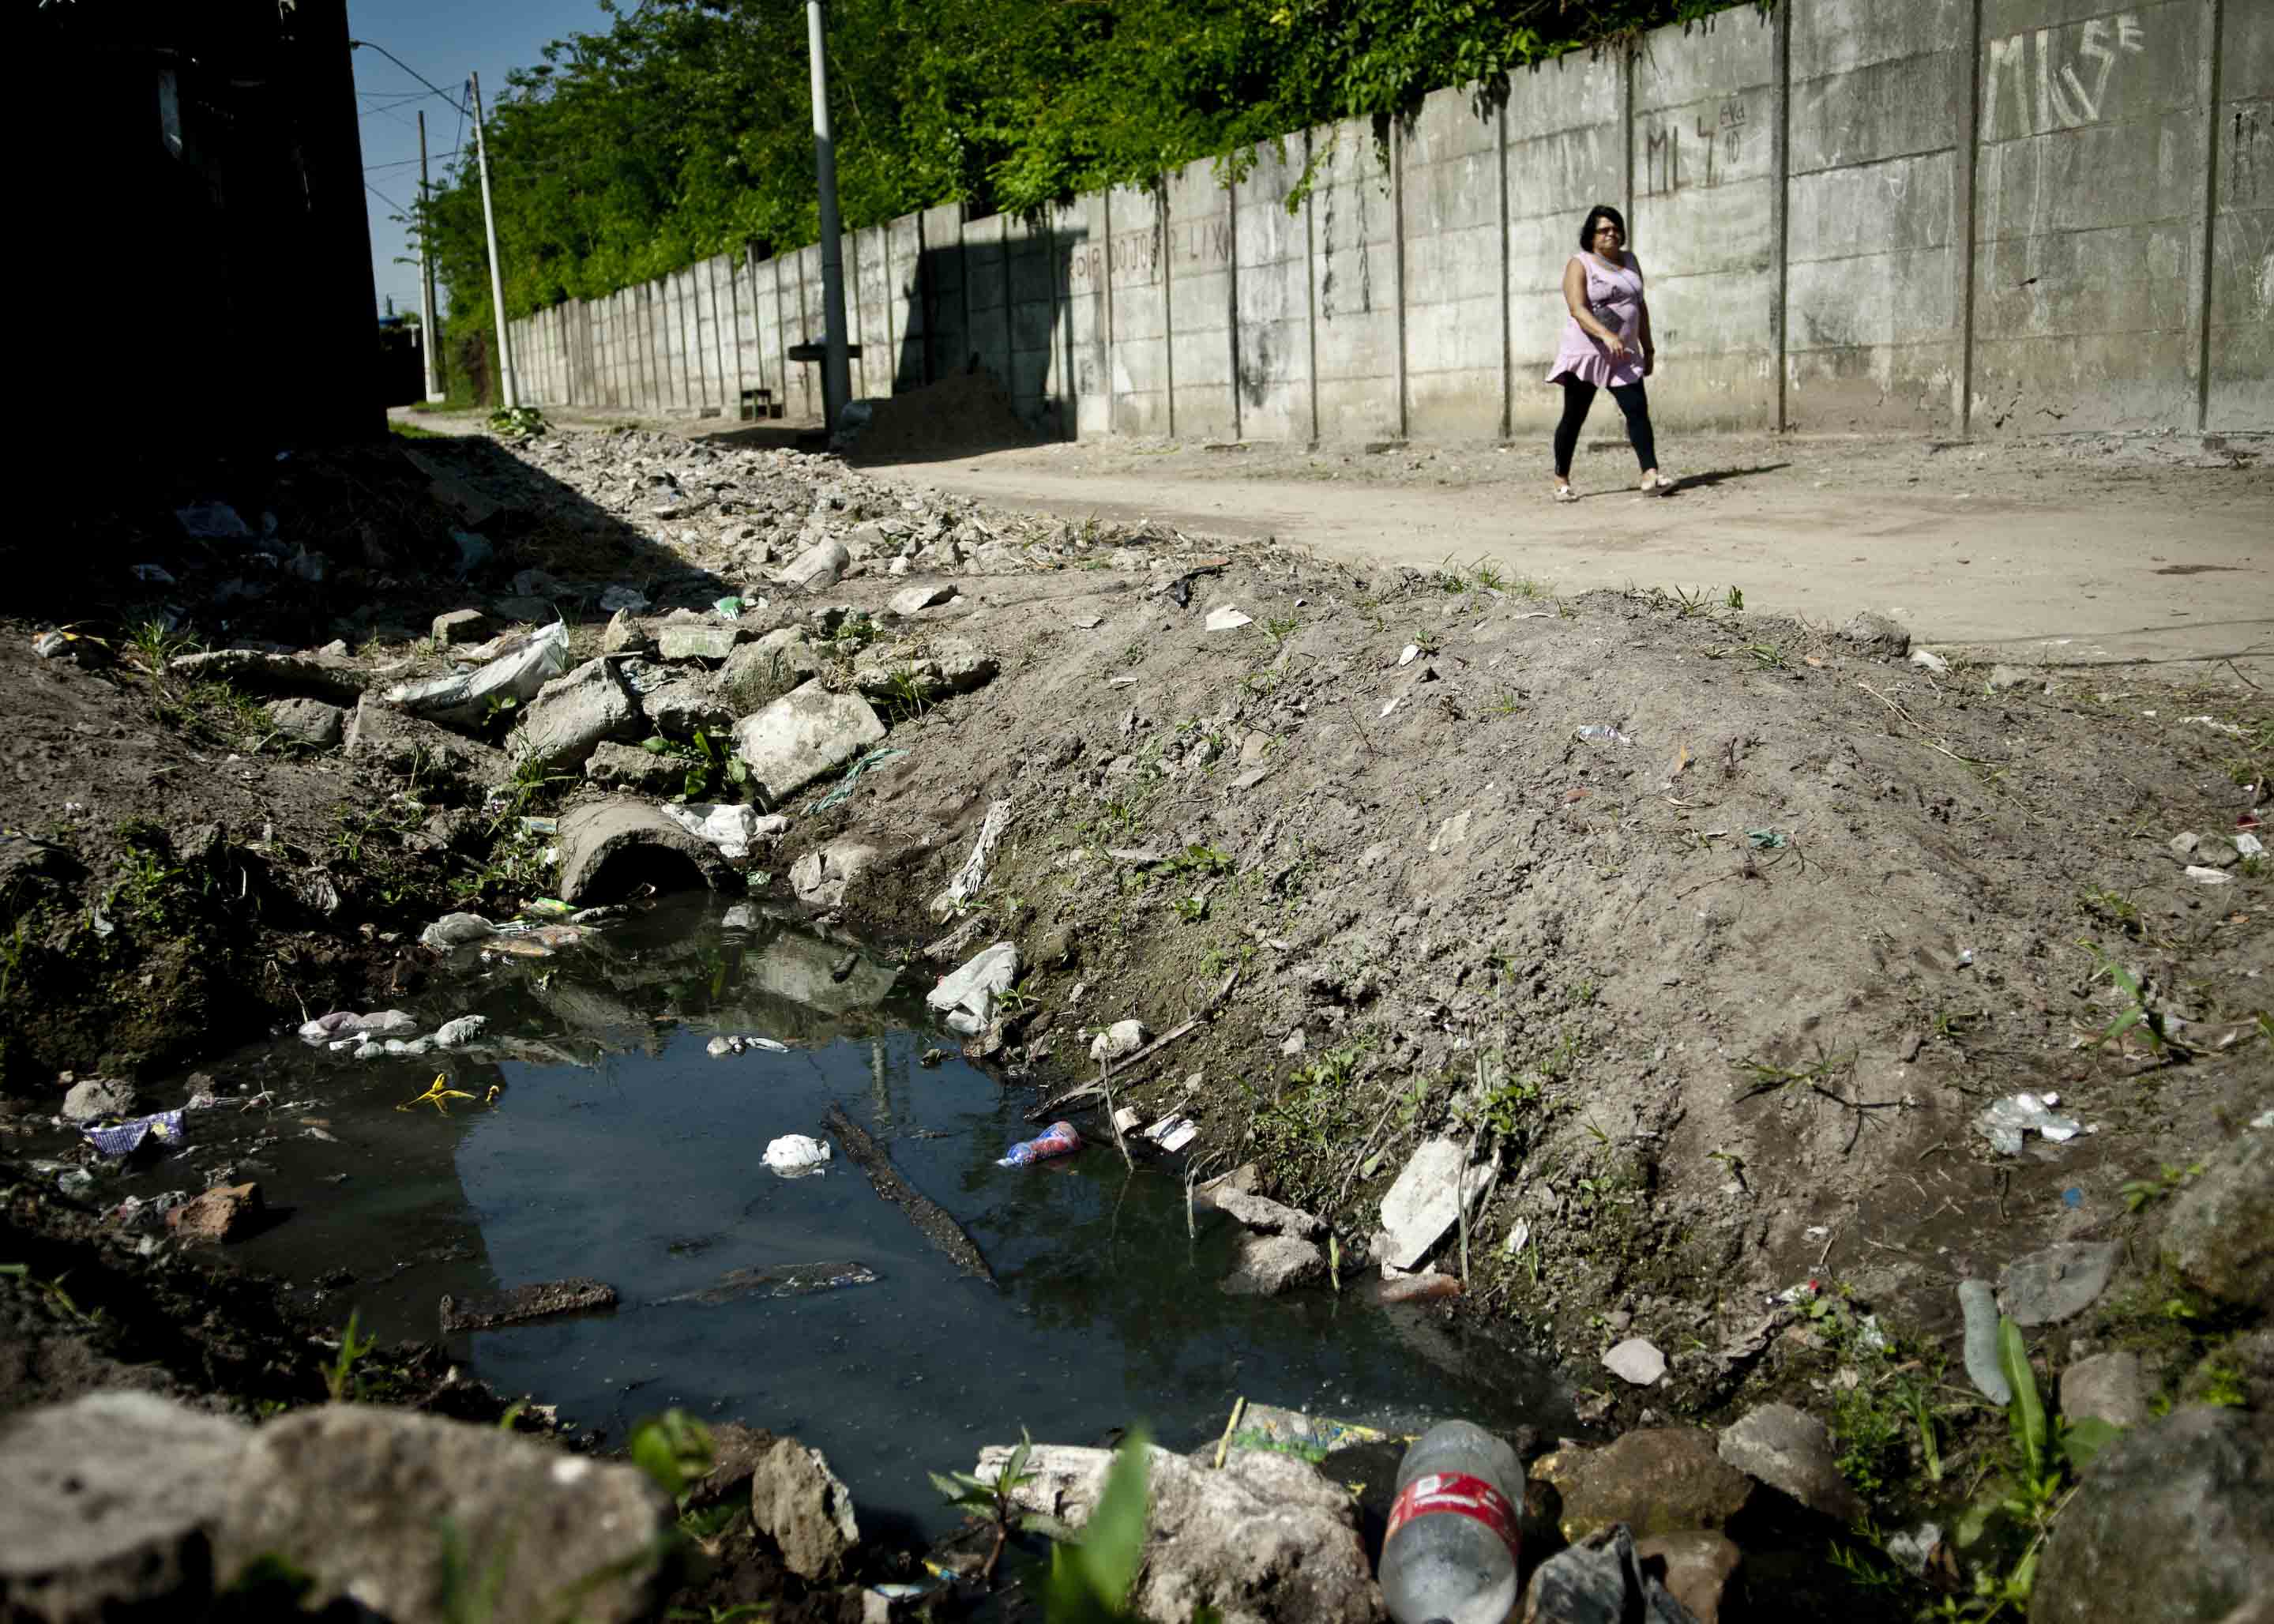 O caminho para a melhora no saneamento do Brasil, que ainda é precário, é longo